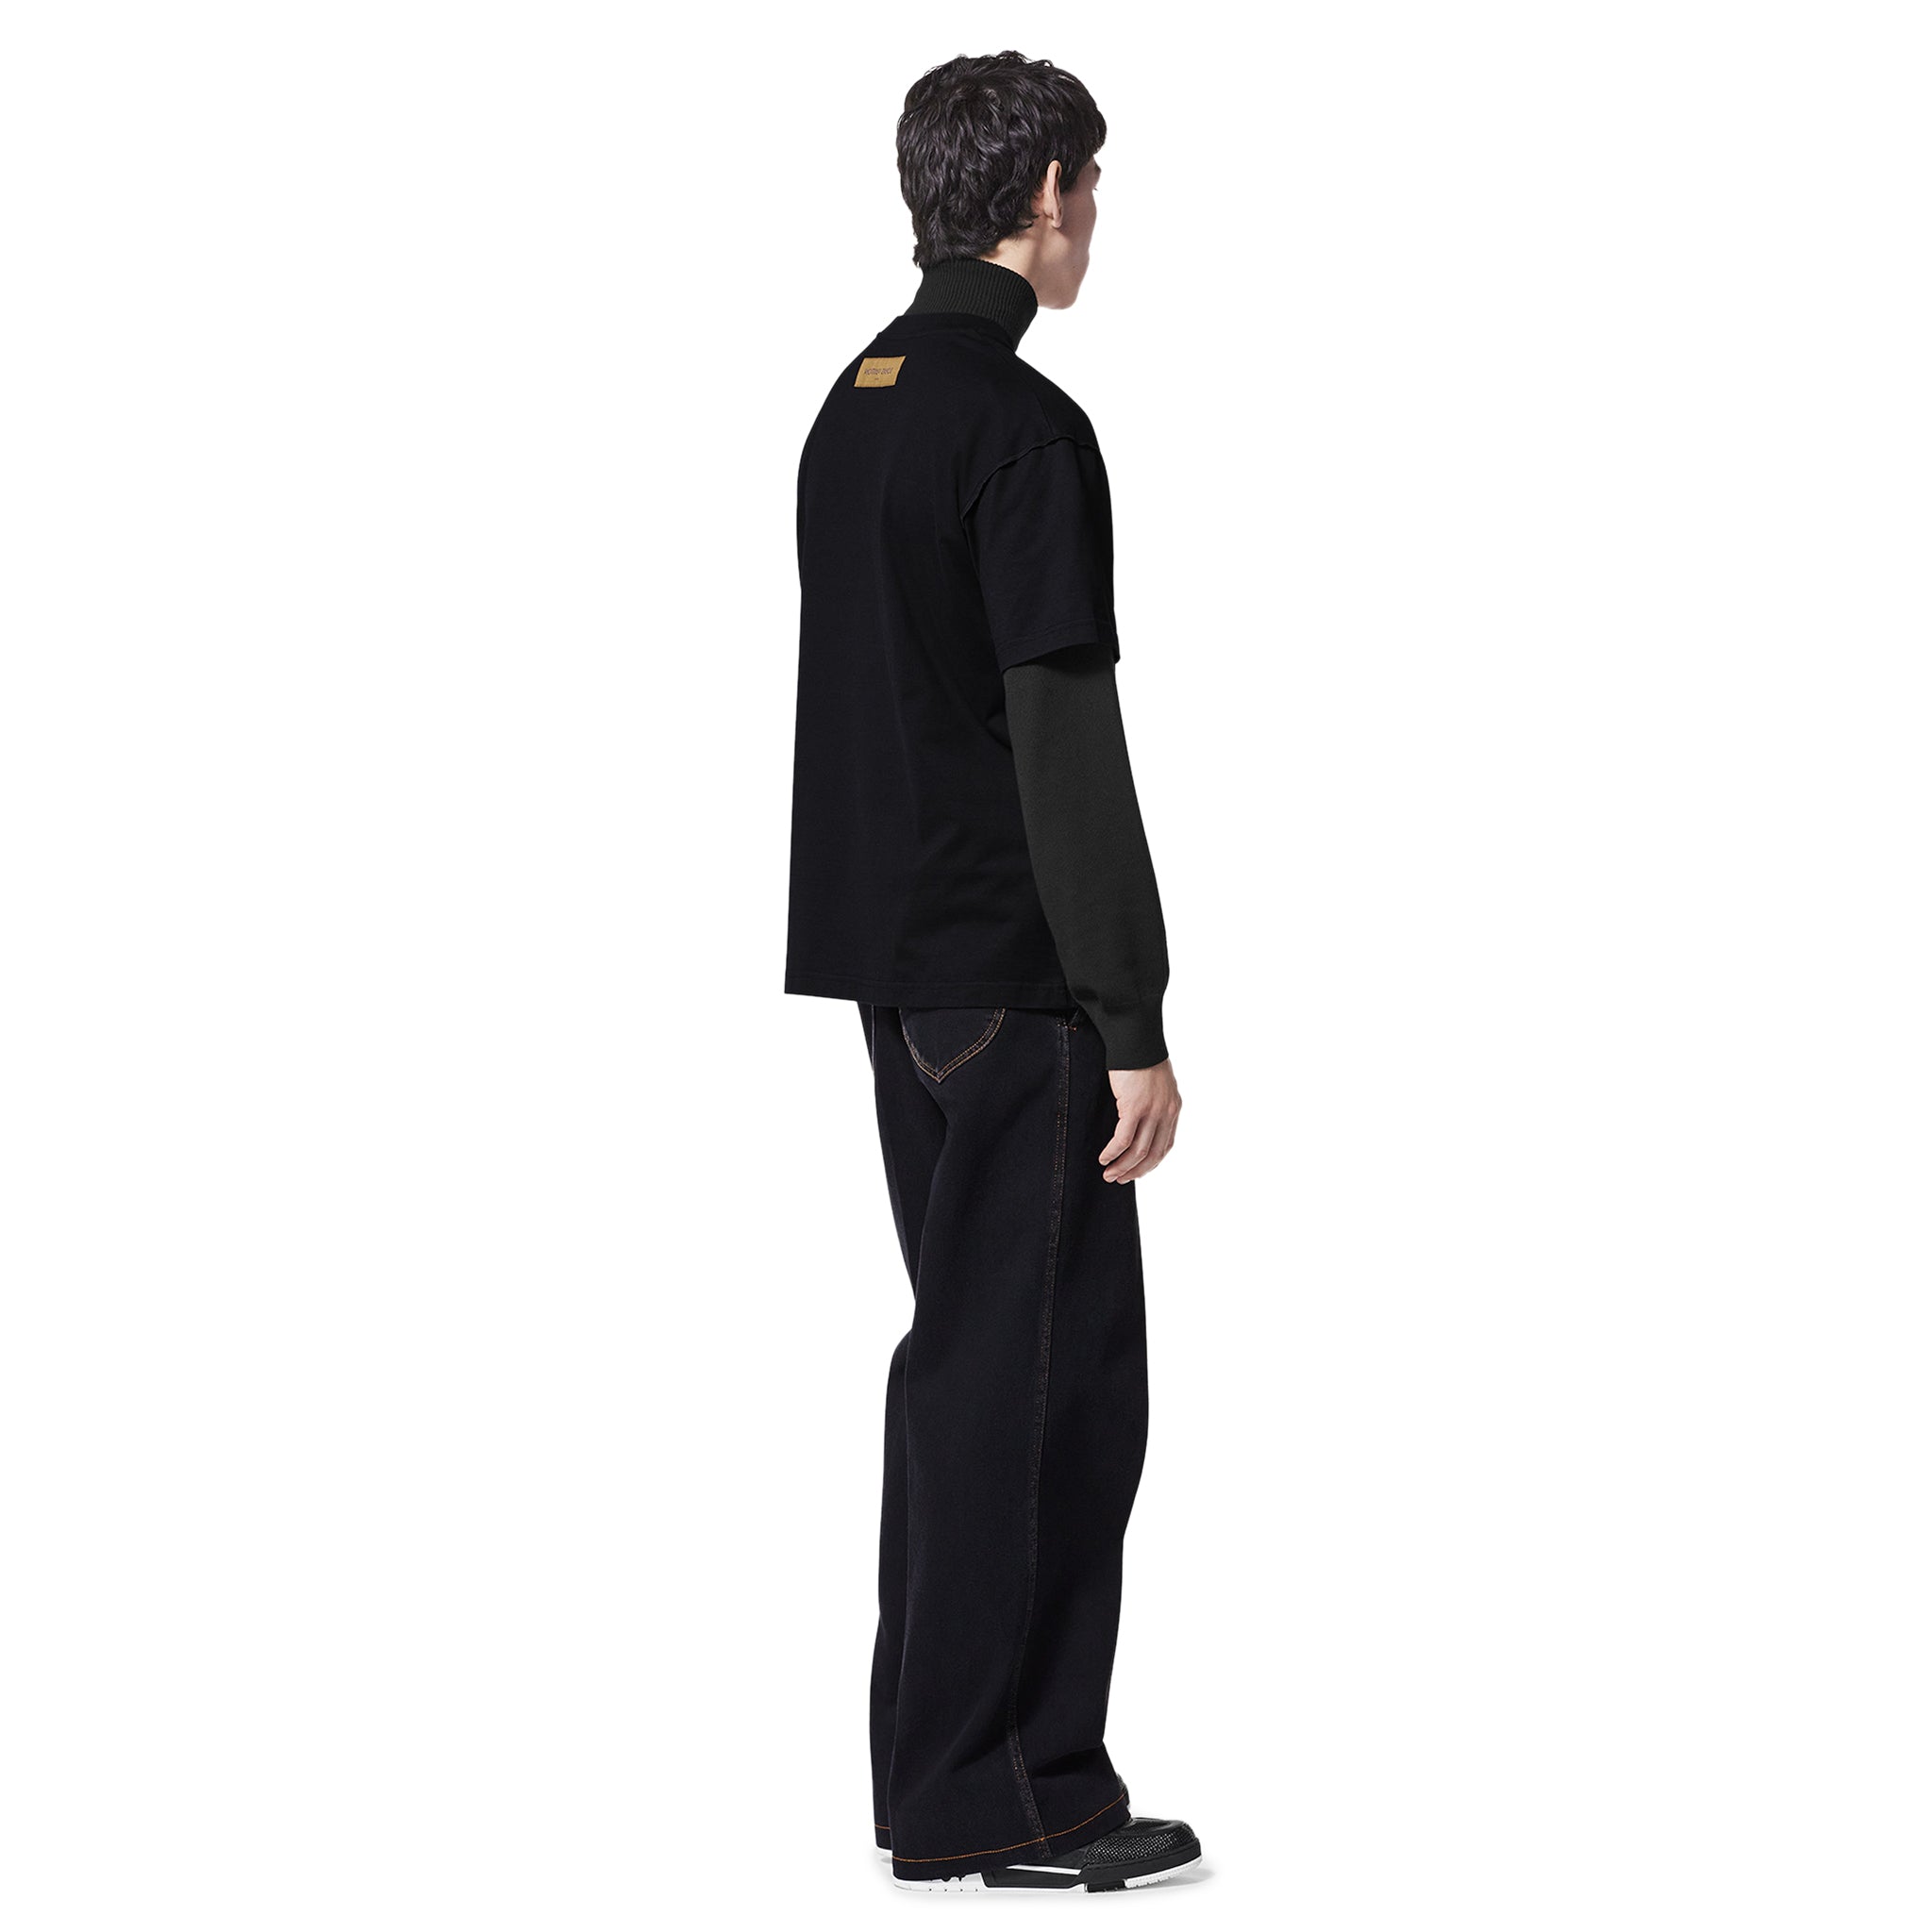 Full model view of Pre Owned Louis Vuitton LV Concert Print Black T Shirt NVPROD3950590V